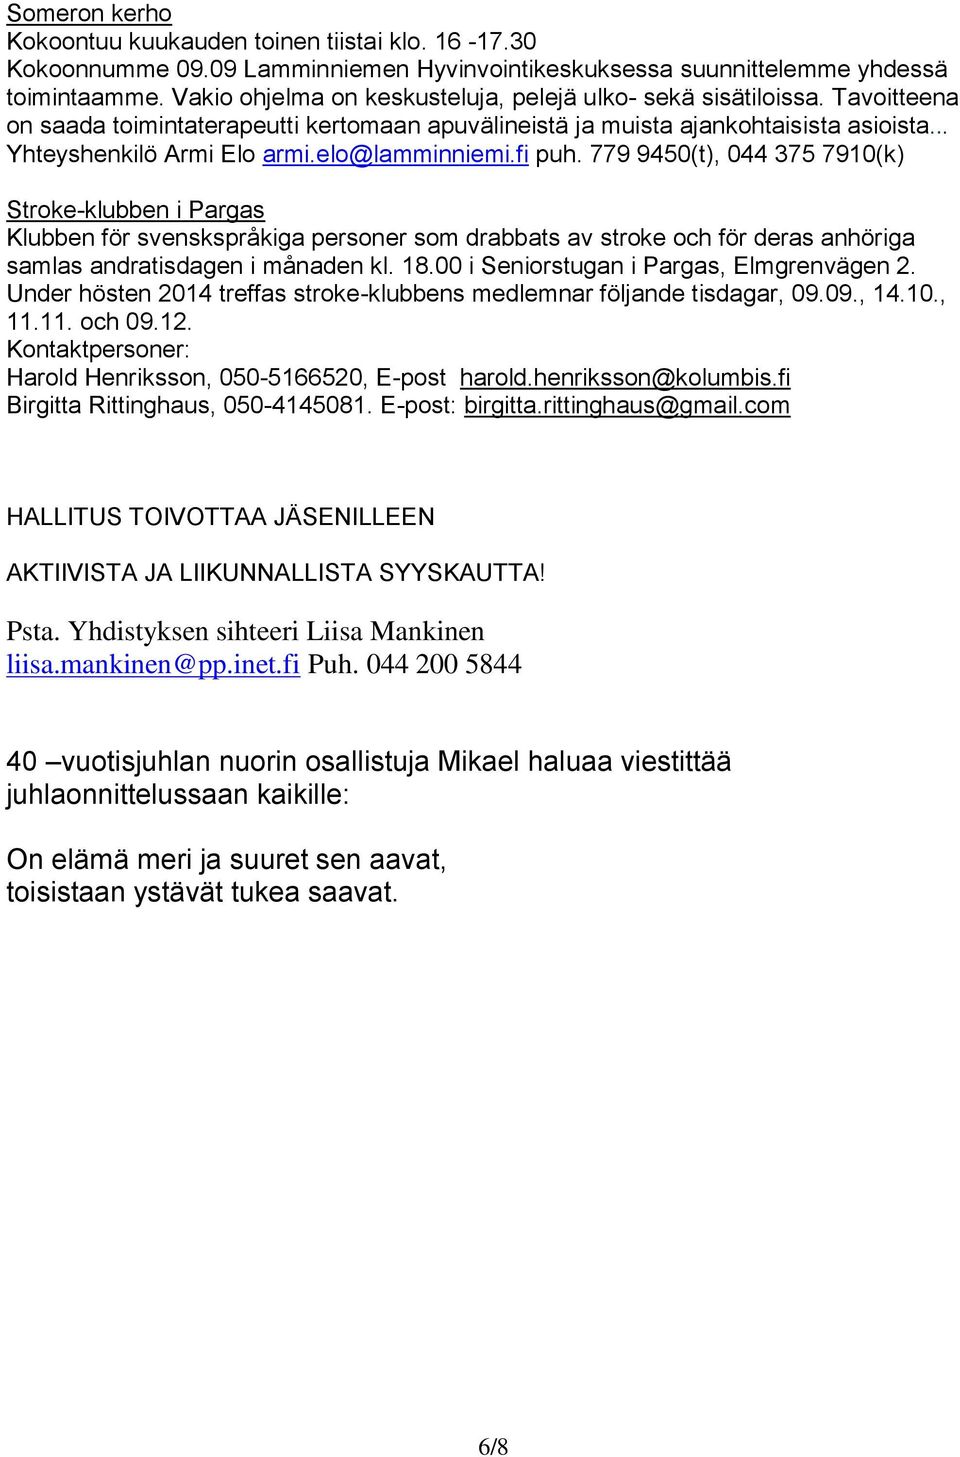 elo@lamminniemi.fi puh. 779 9450(t), 044 375 7910(k) Stroke-klubben i Pargas Klubben för svenskspråkiga personer som drabbats av stroke och för deras anhöriga samlas andratisdagen i månaden kl. 18.